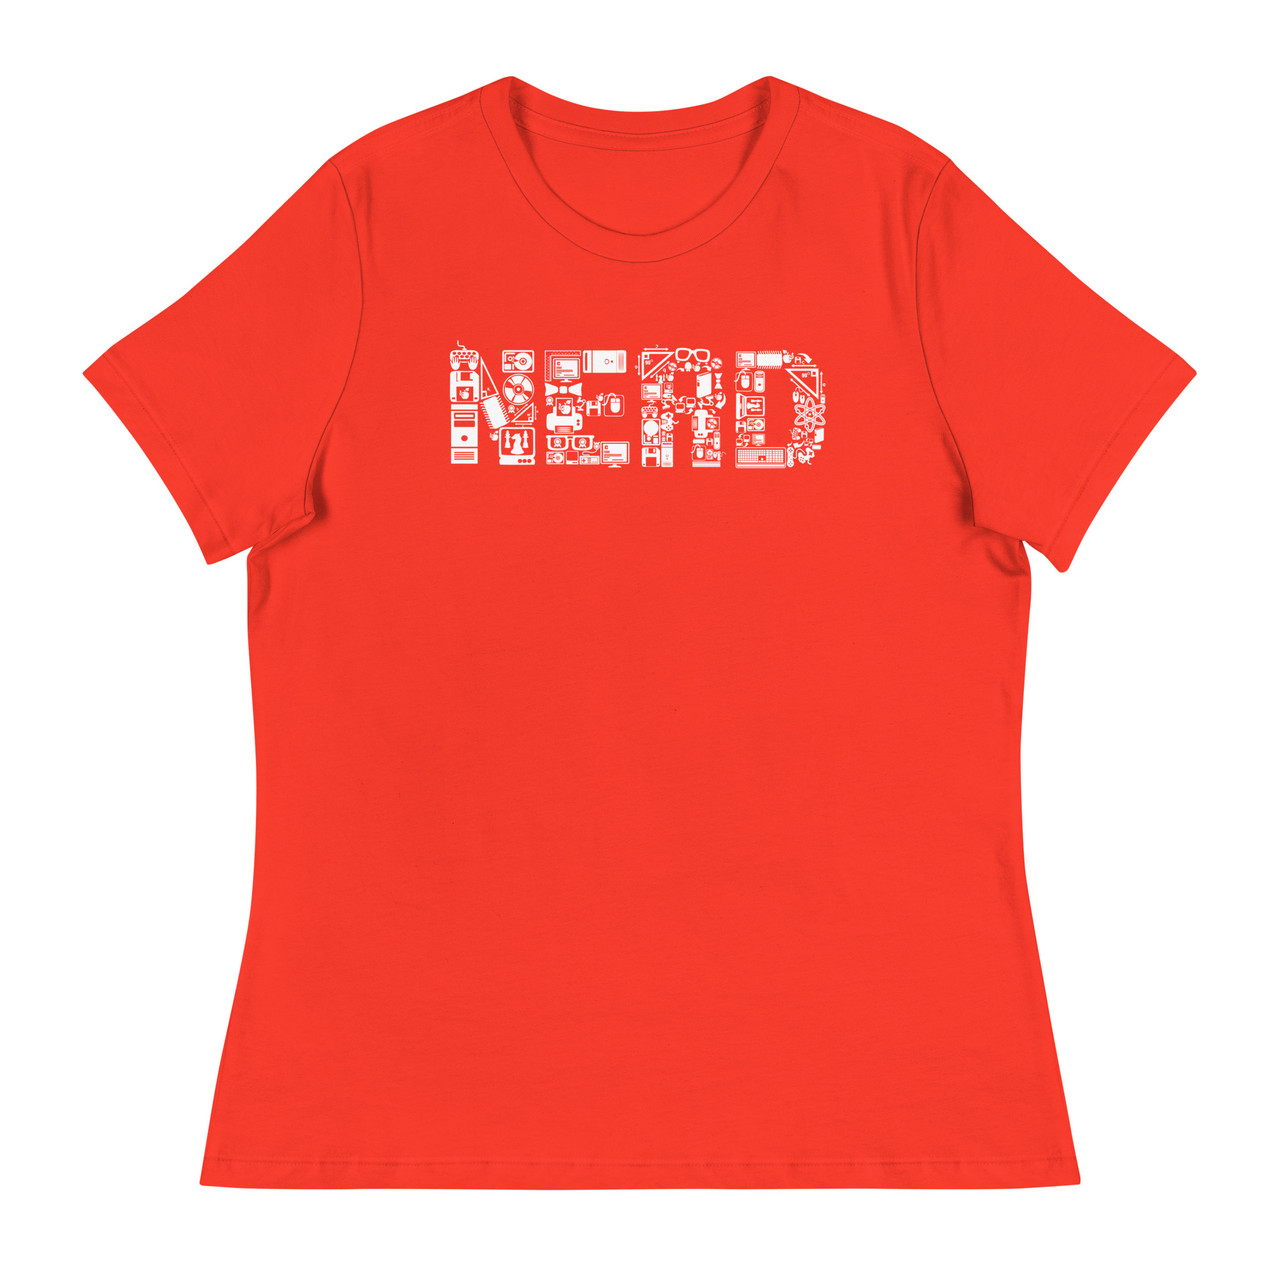 NERD Women's Relaxed T-Shirt - Bella + Canvas 6400 